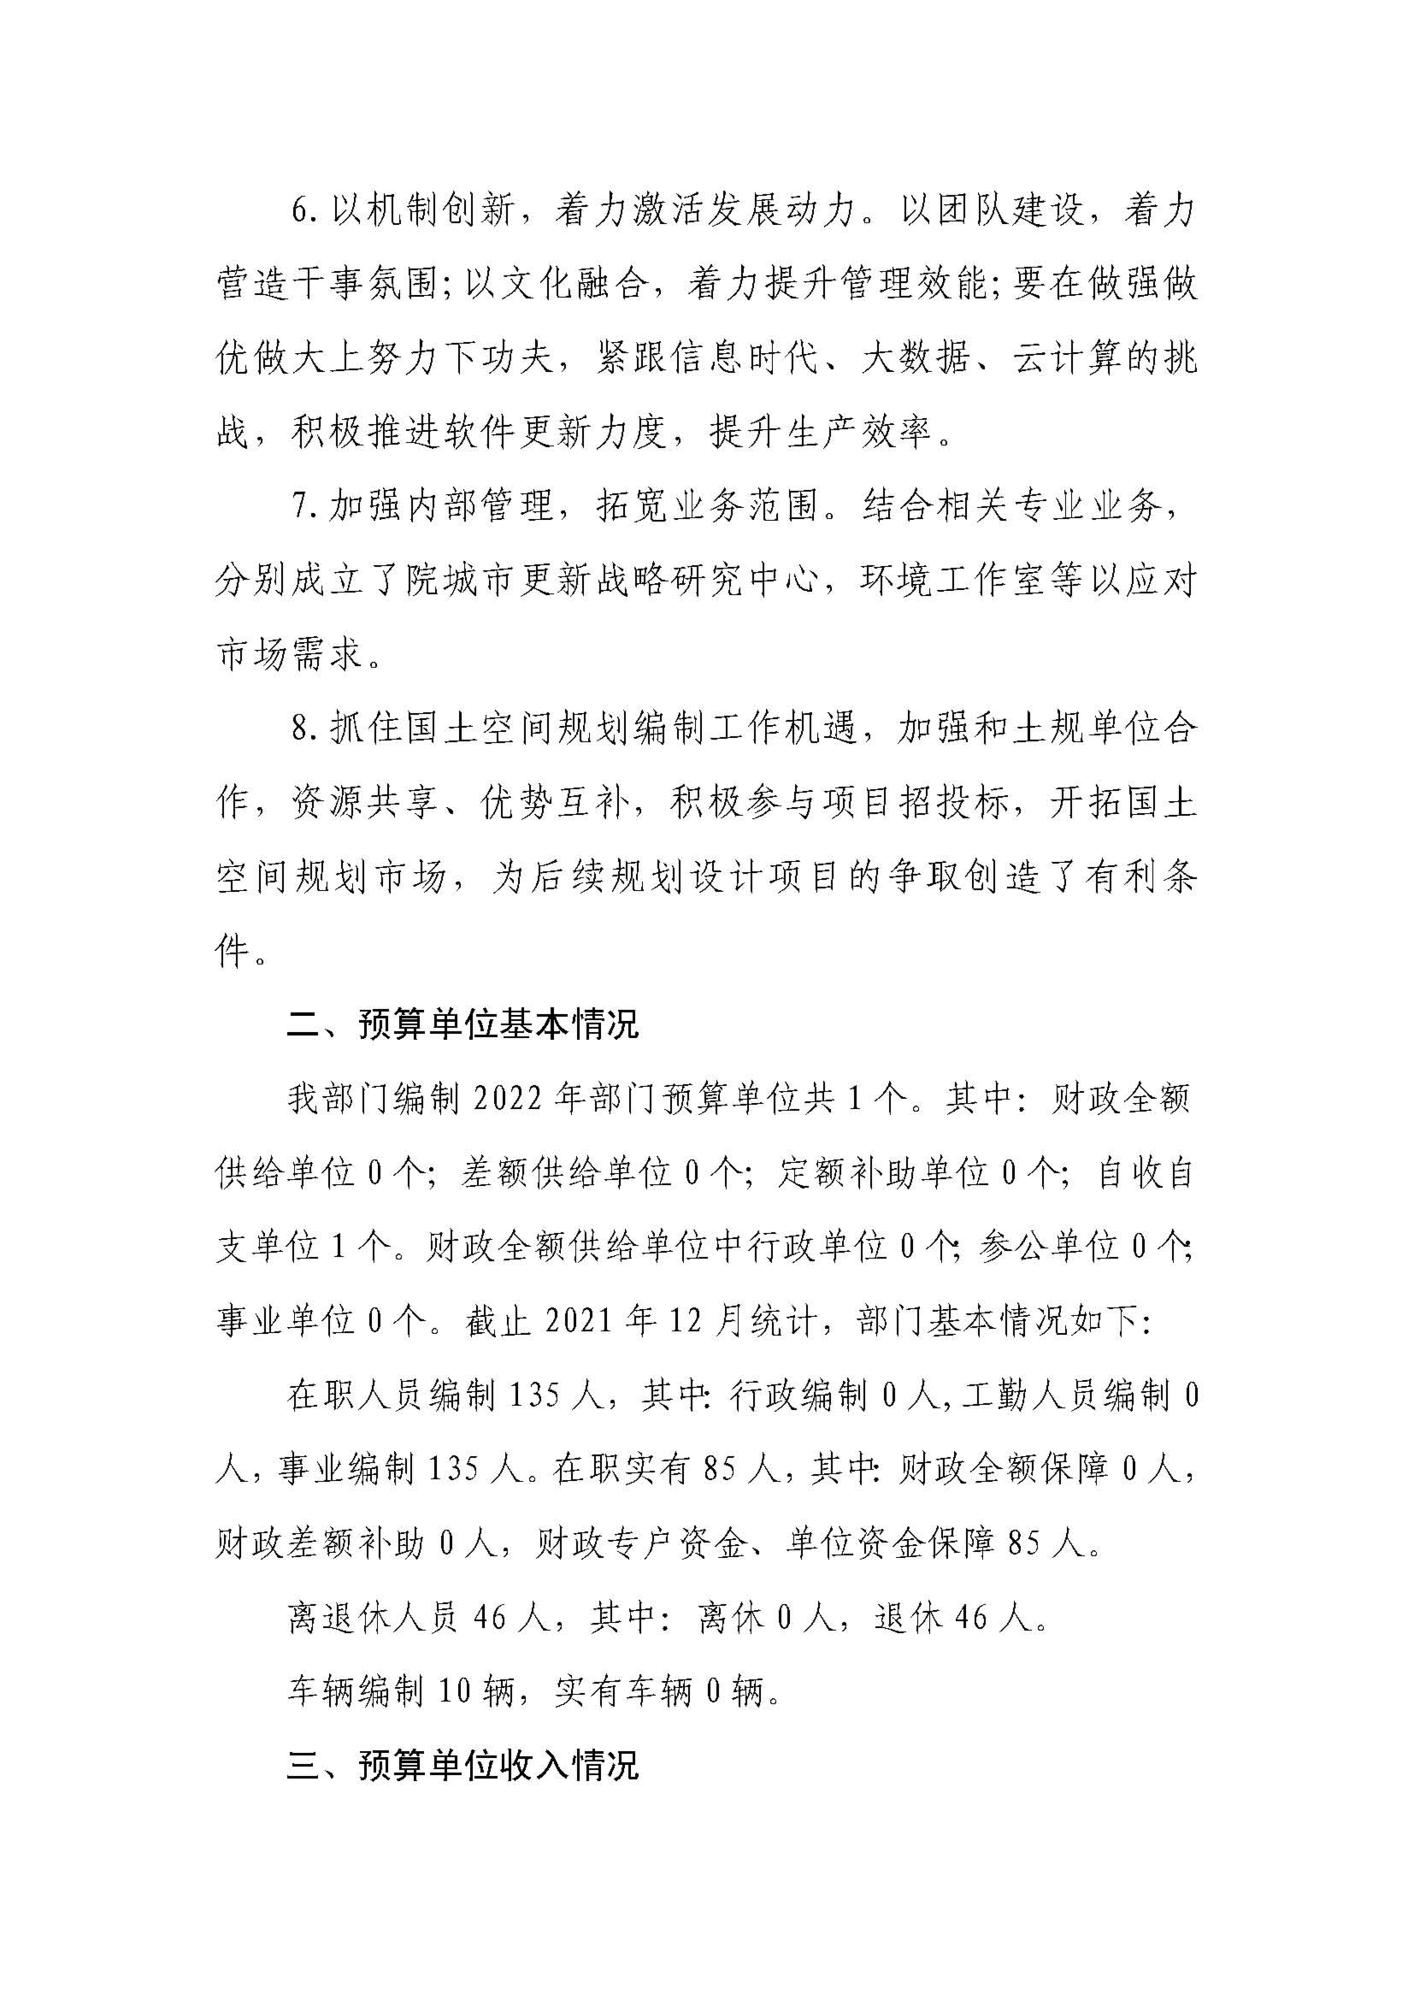 云南省城乡规划设计研究院（预算公开说明）_页面_05.jpg